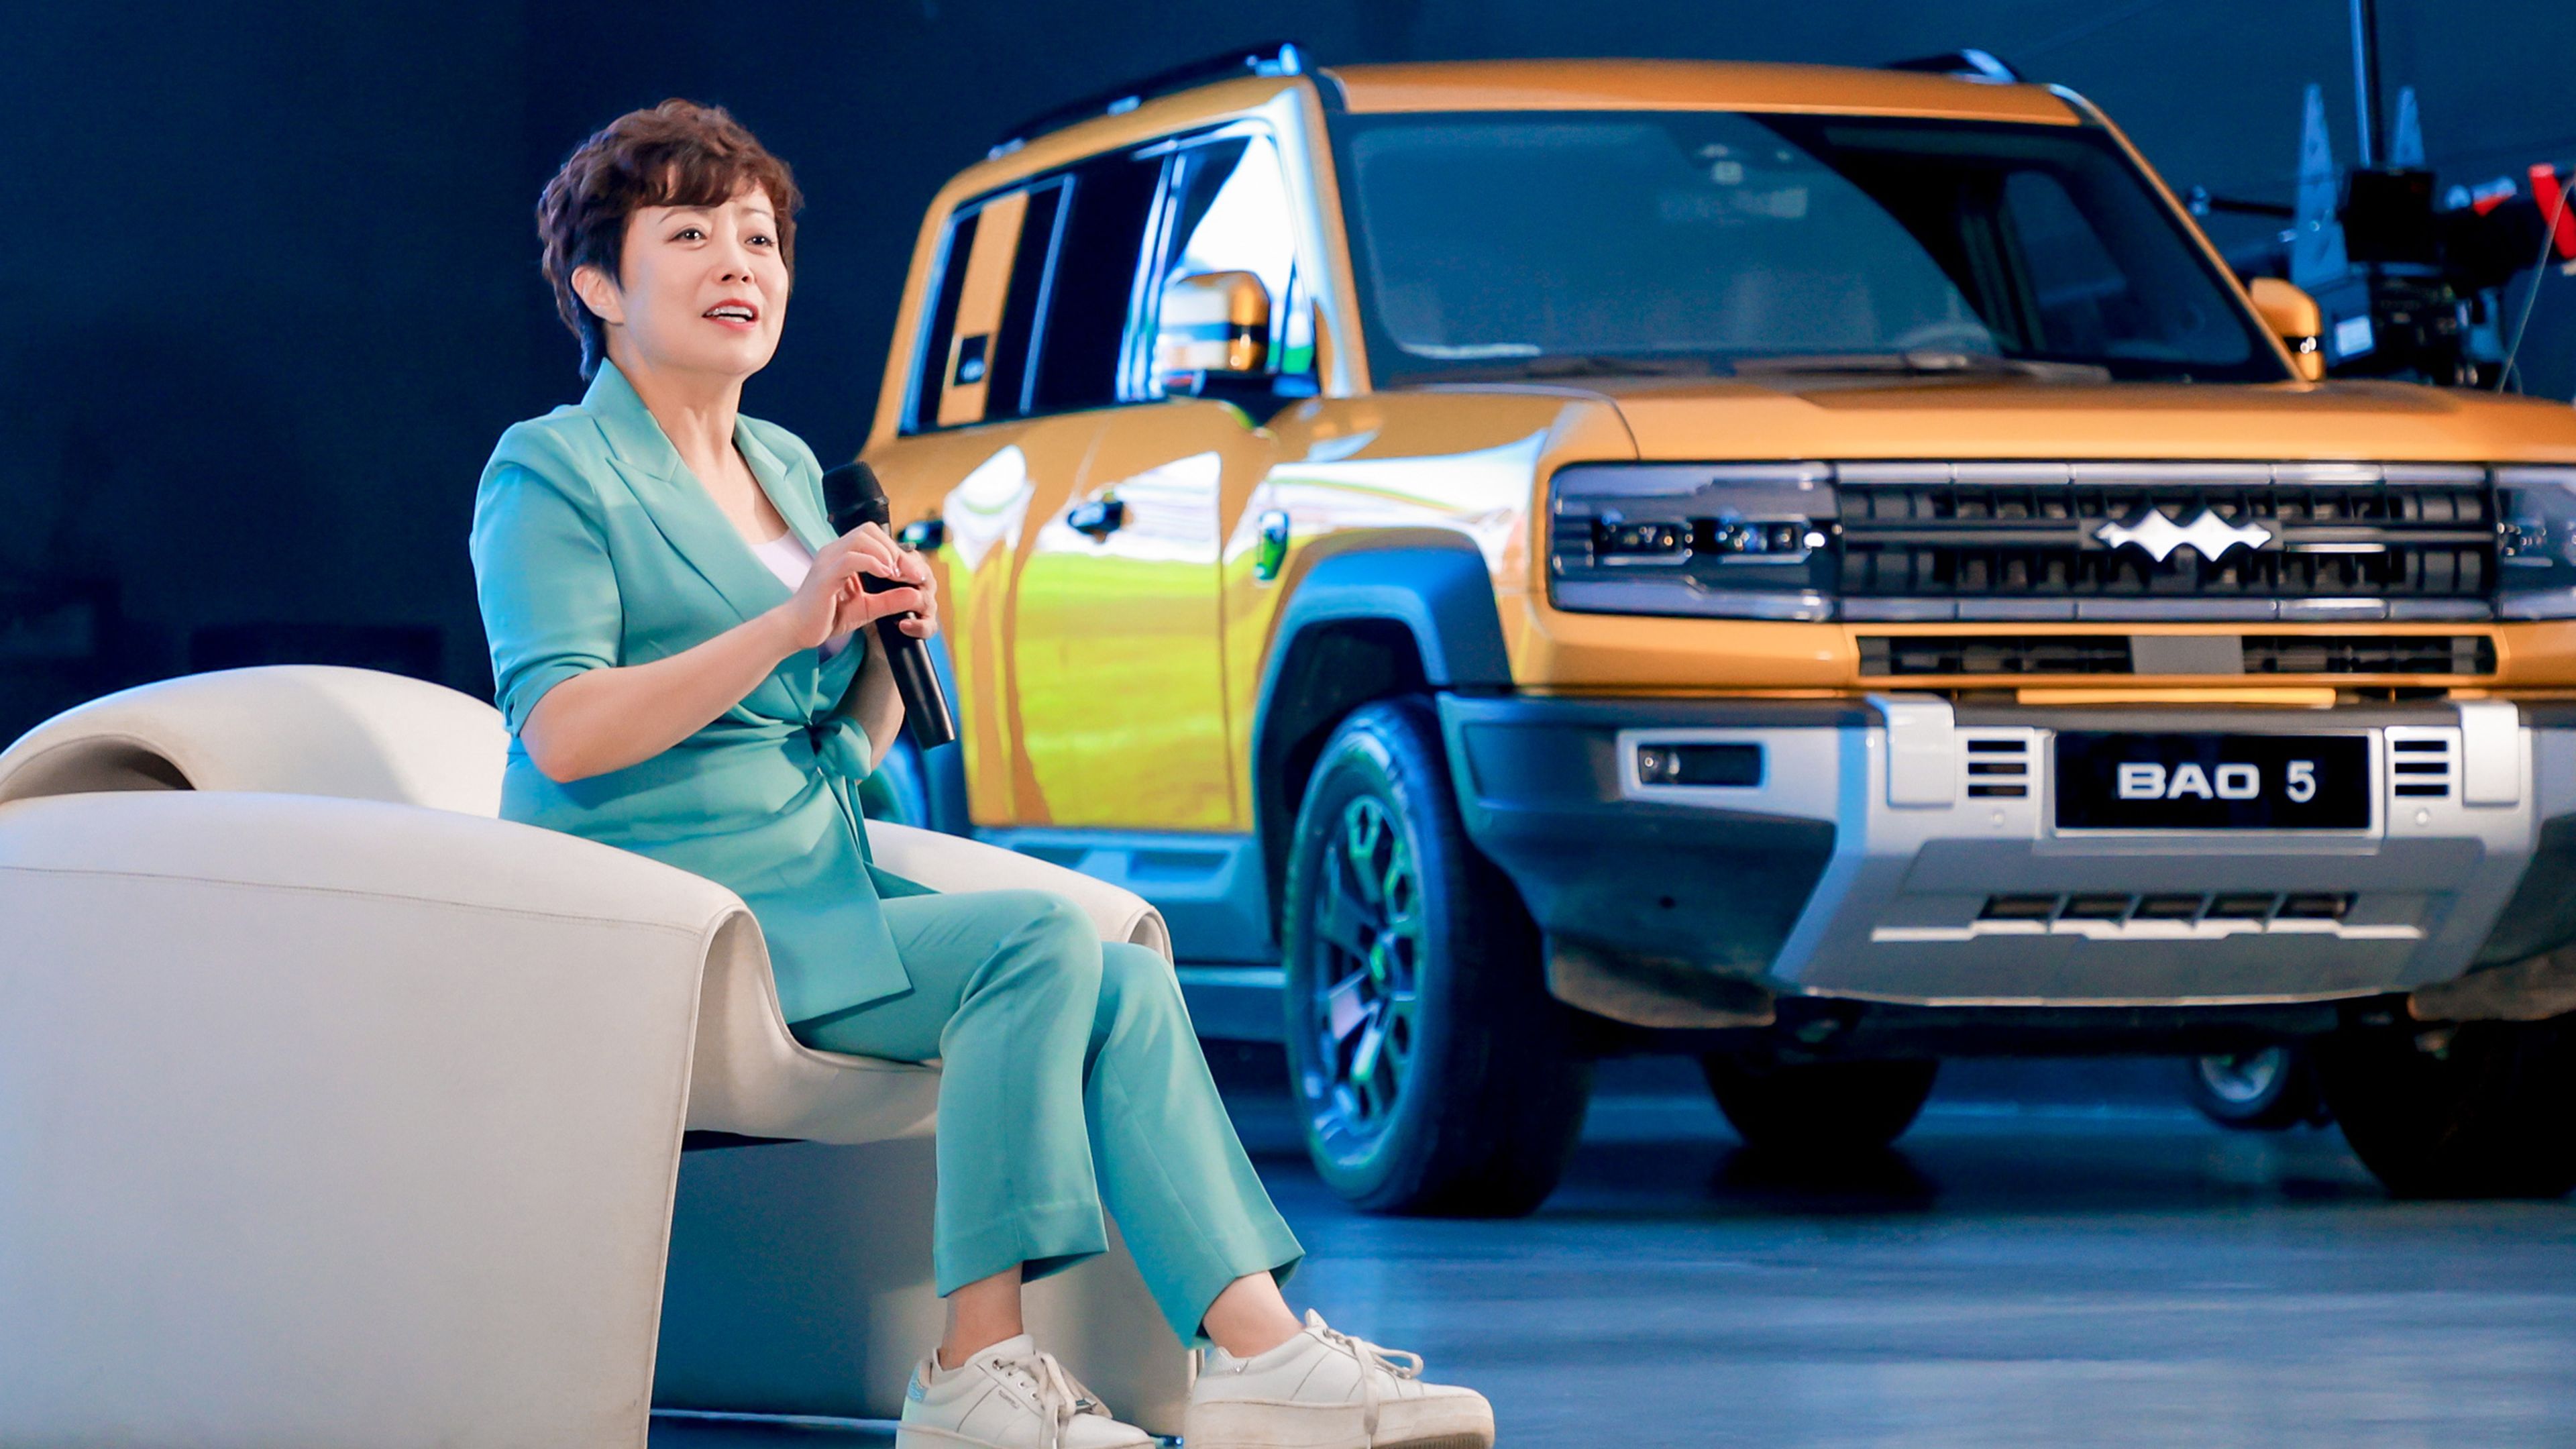 Stella Li, vicepresidenta de BYD Company, durante la entrevista, junto al Fanchengbao Bao 5, uno de los modelos que fabrica su grupo empresarial.